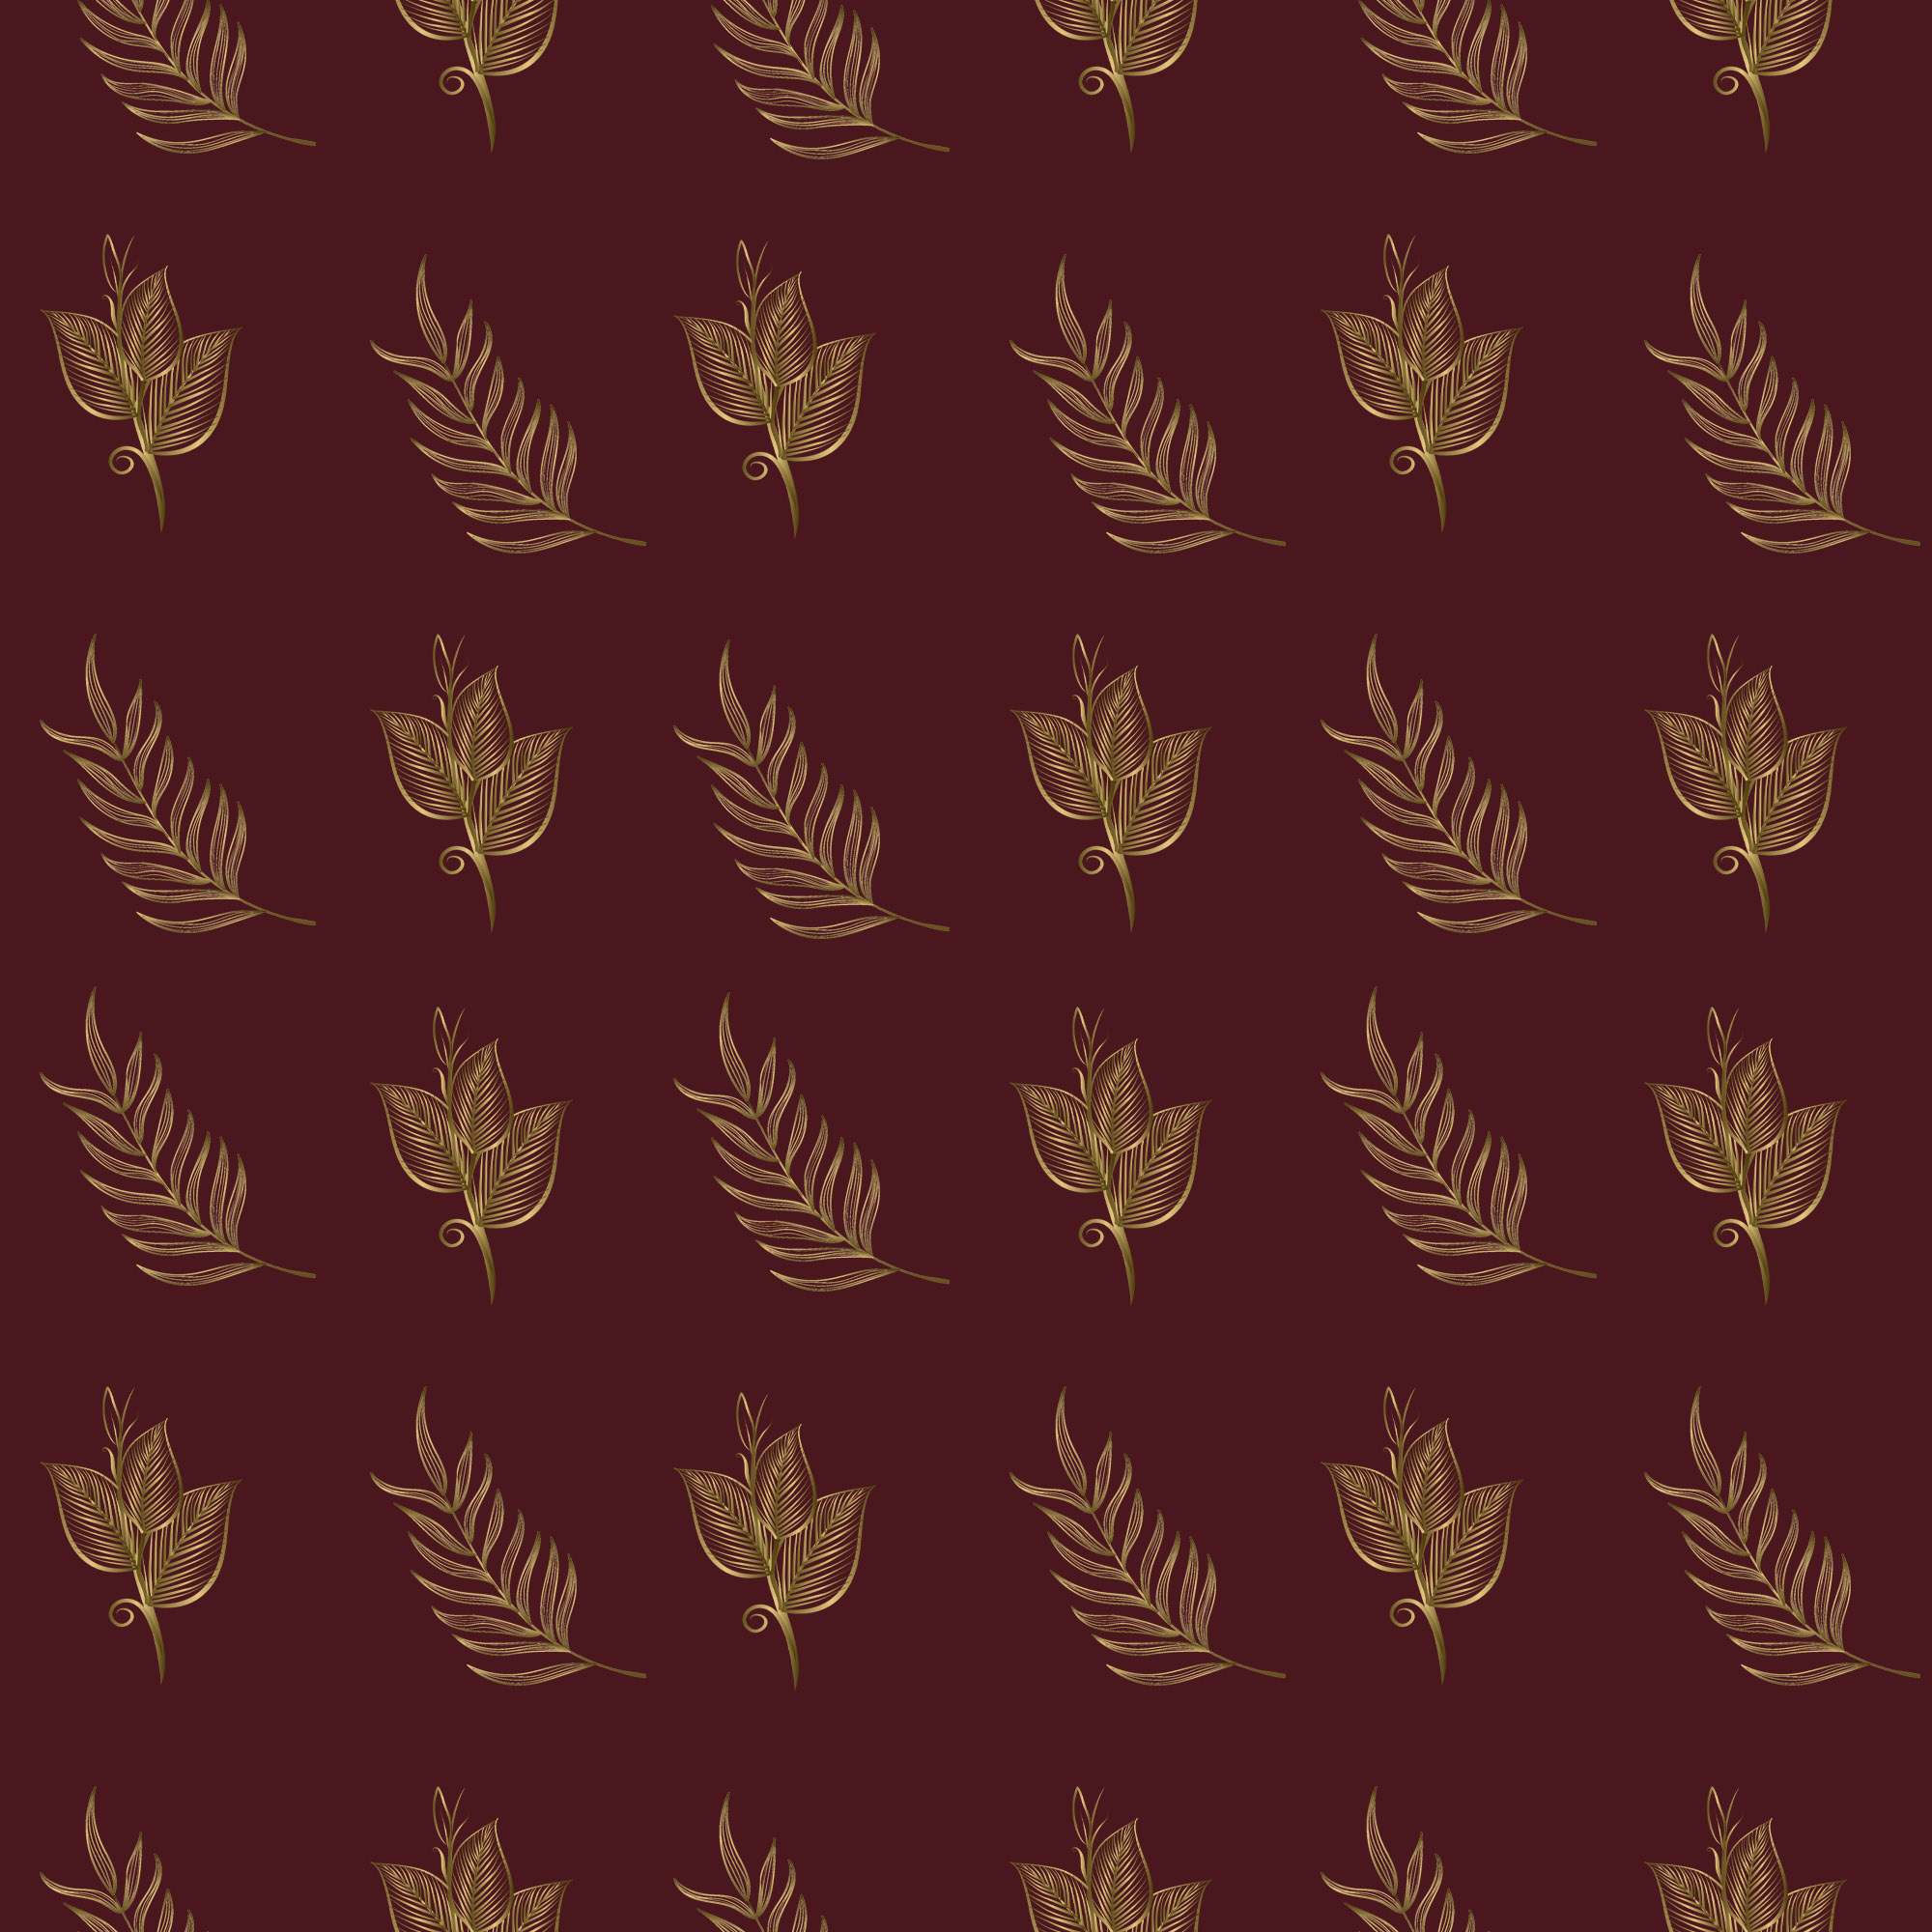 golden leaf pattern 7 869